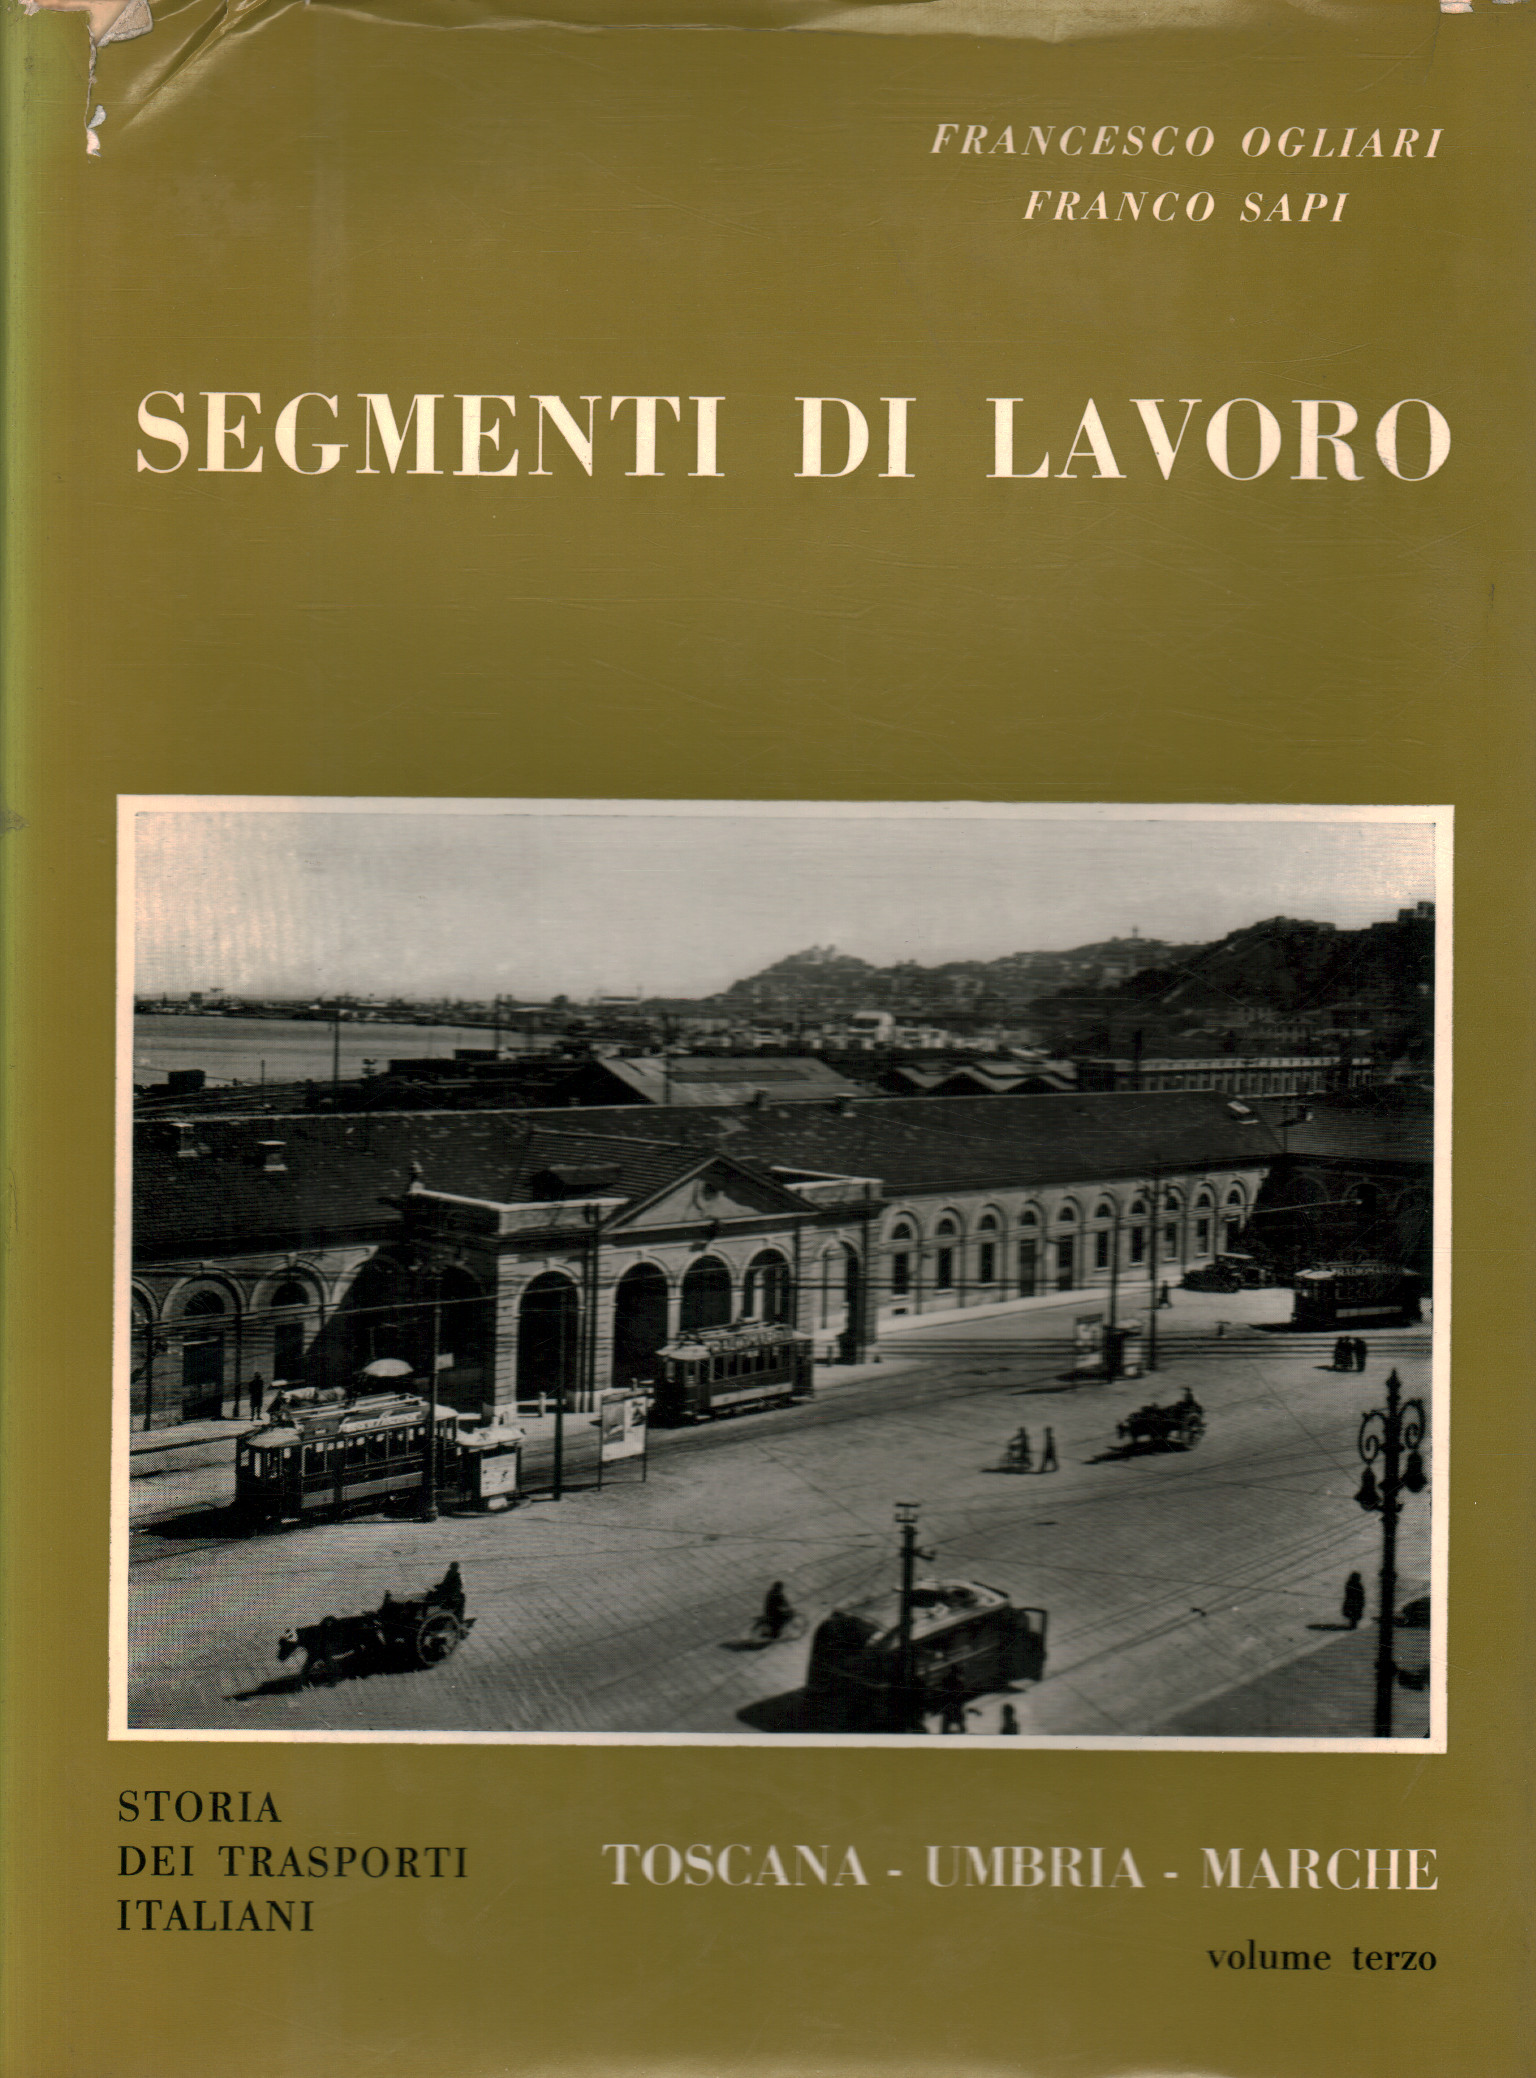 Work segments volume 3, Francesco Ogliari Franco Sapi